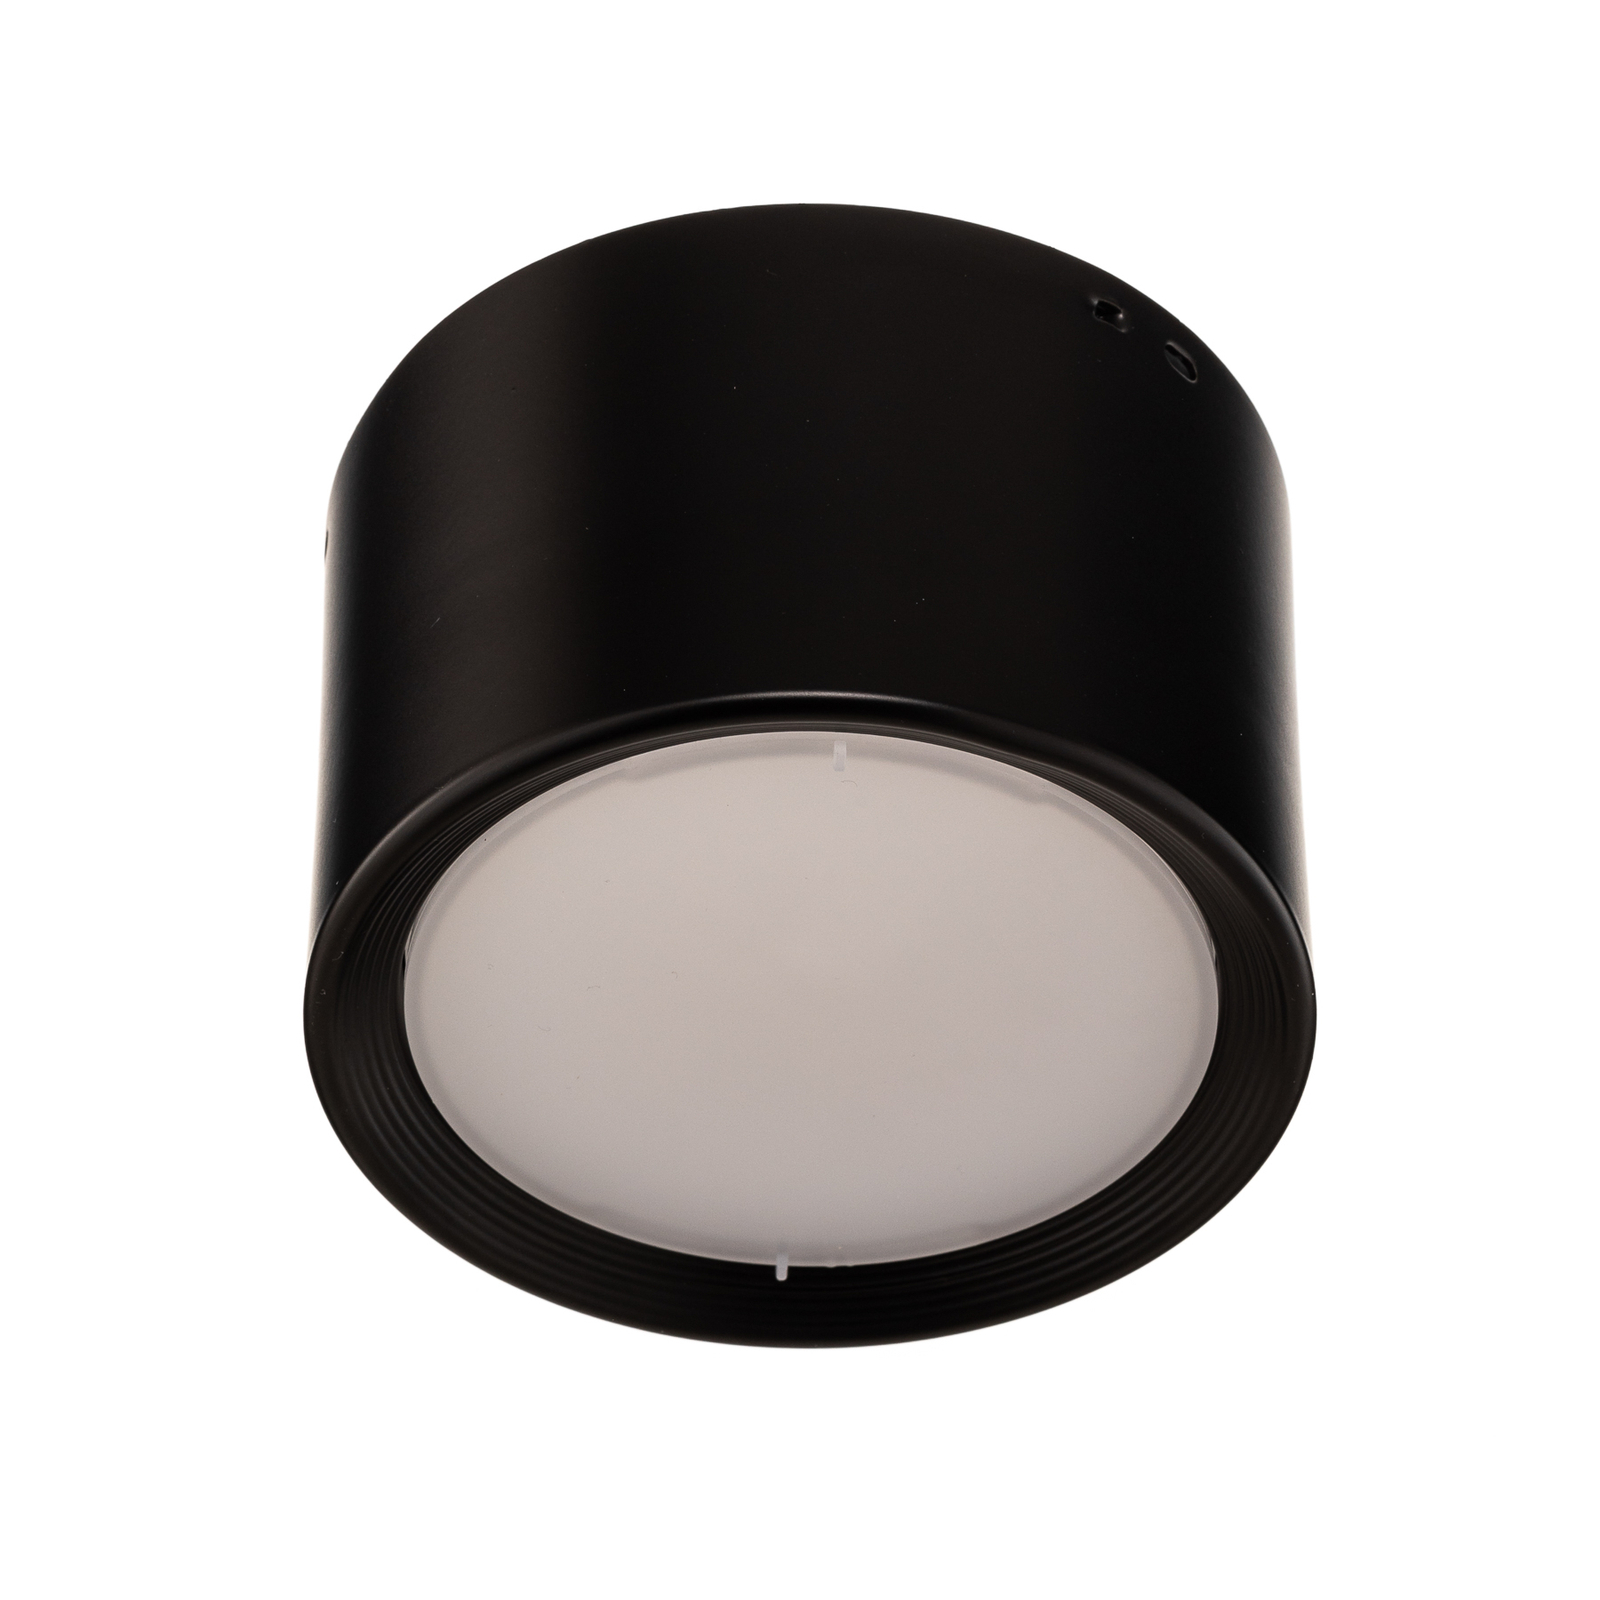 Ita LED-downlight i svart med kupa, Ø 12 cm